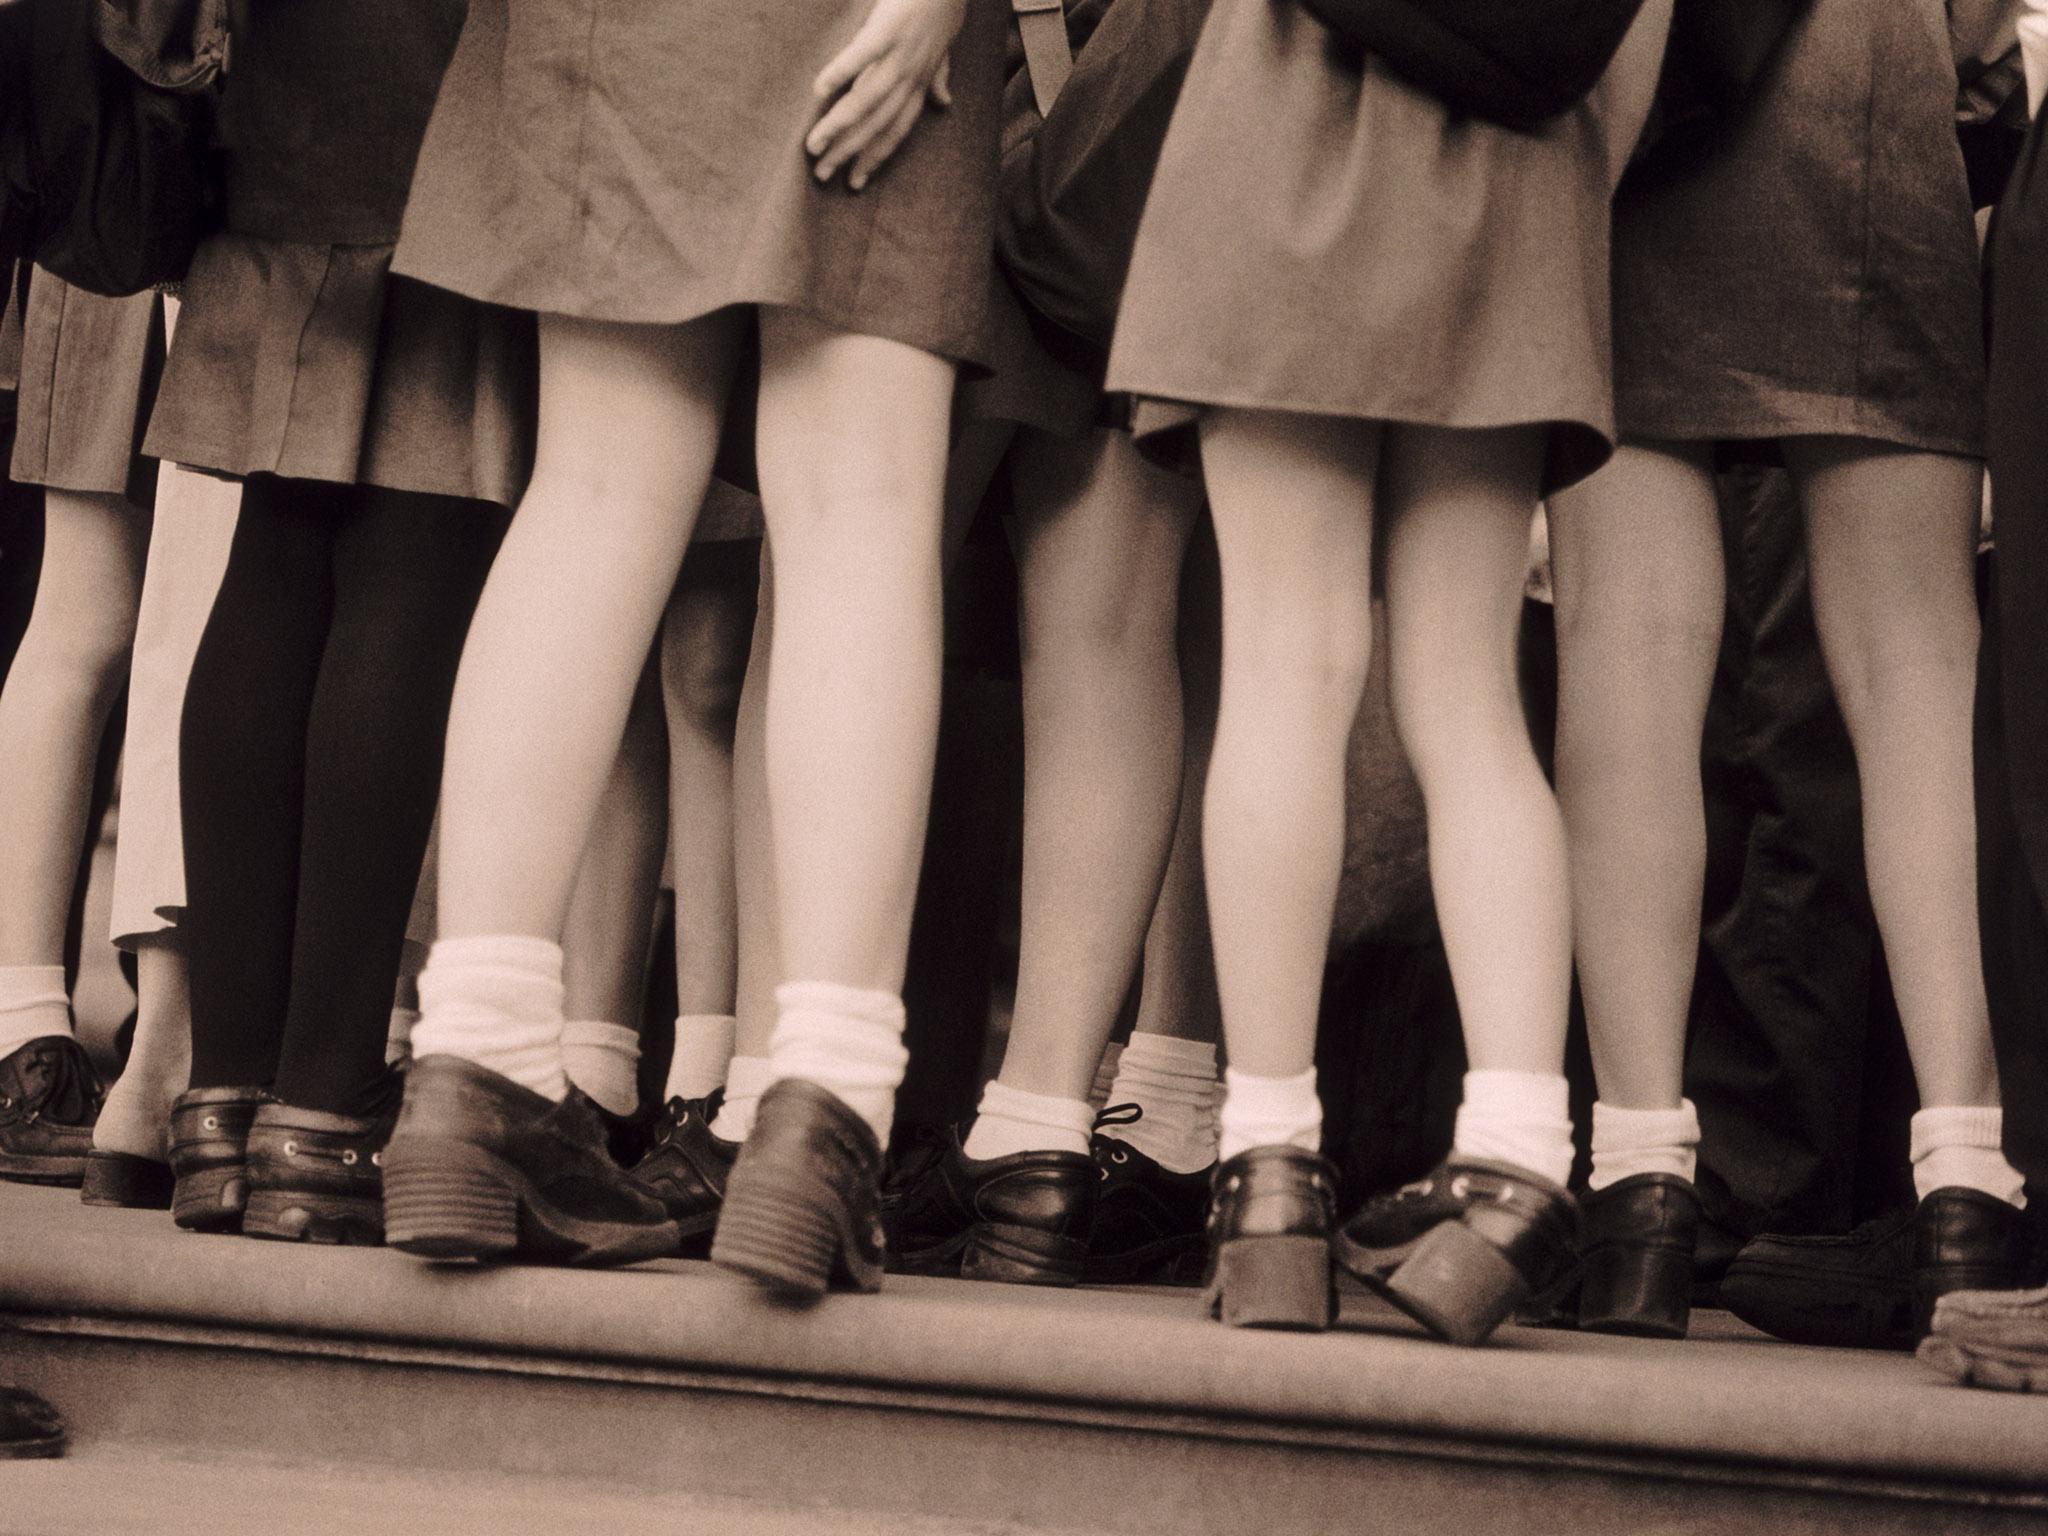 Σχολεία στην Αγγλία απαγόρευσαν στα κορίτσια να φοράνε φούστες για να μην αισθάνονται άβολα οι trans μαθητές